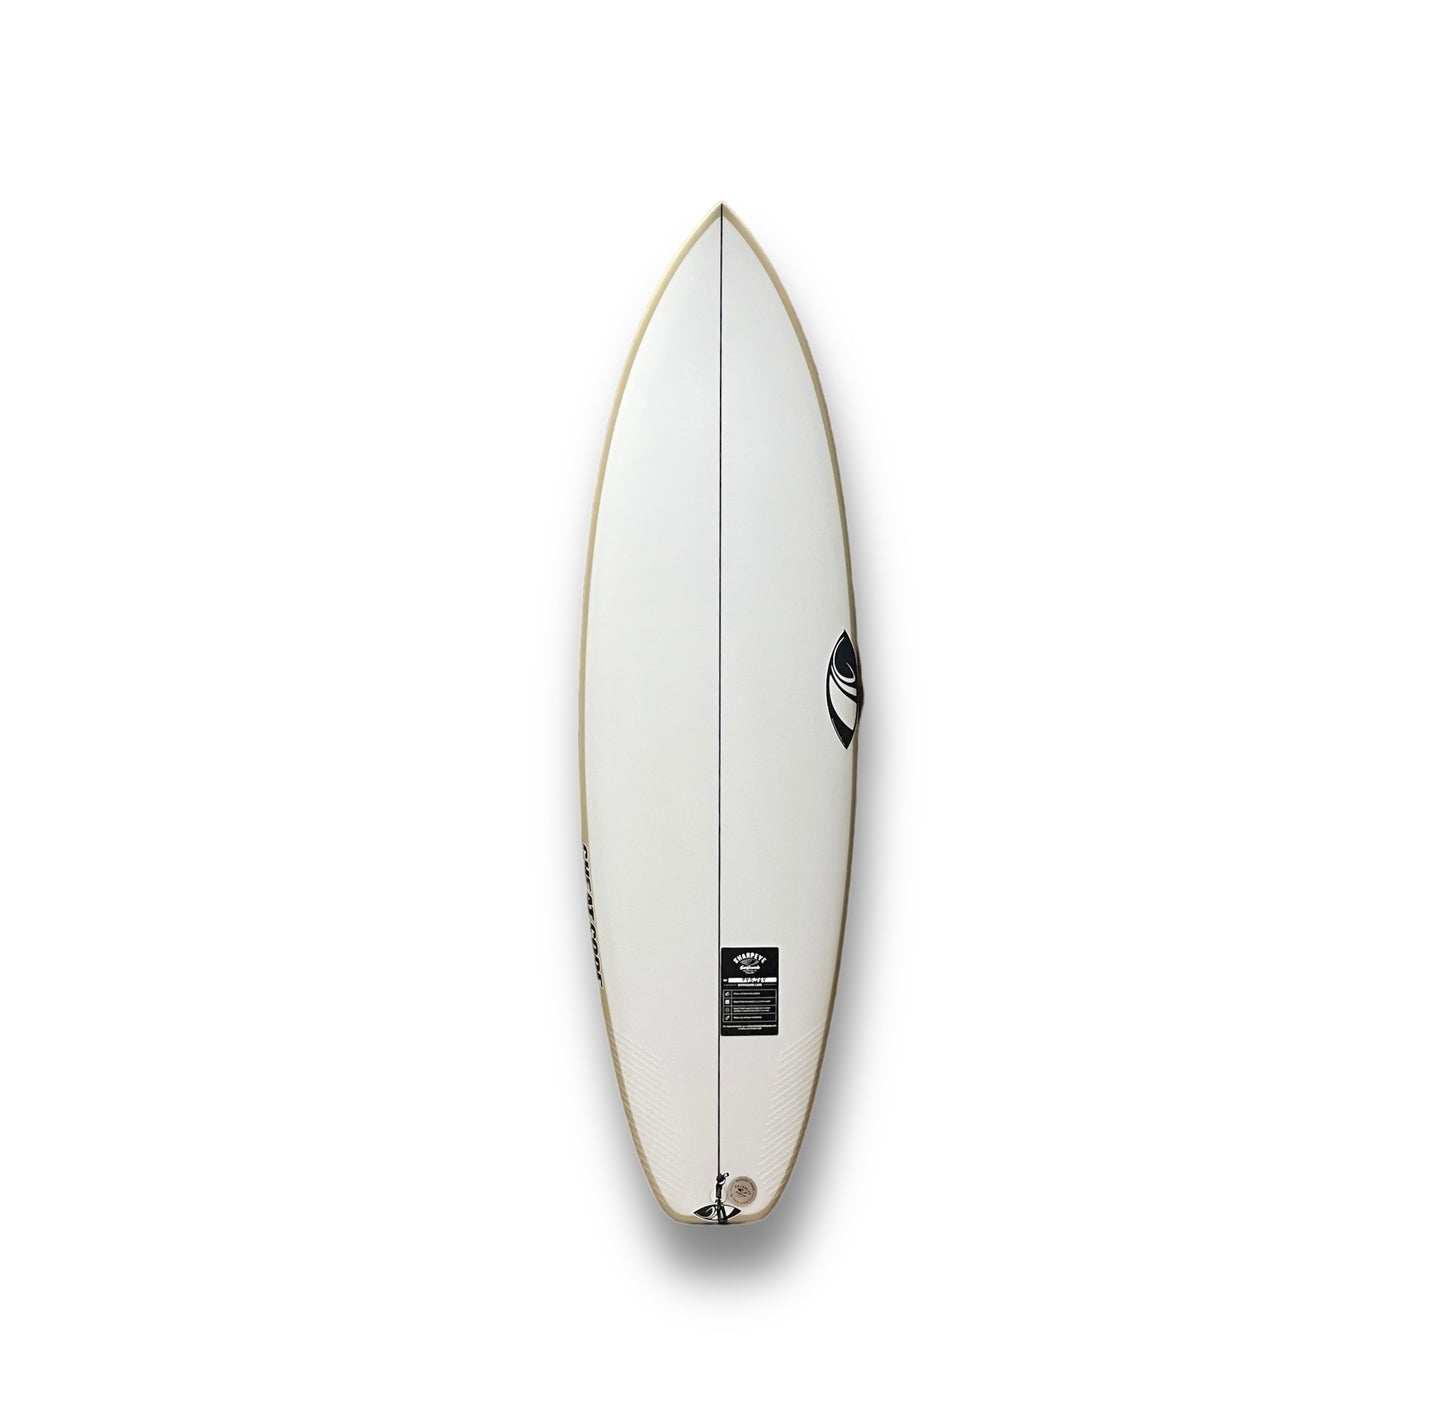 SHARP EYE CHEAT CODE 5'7" SURFBOARD